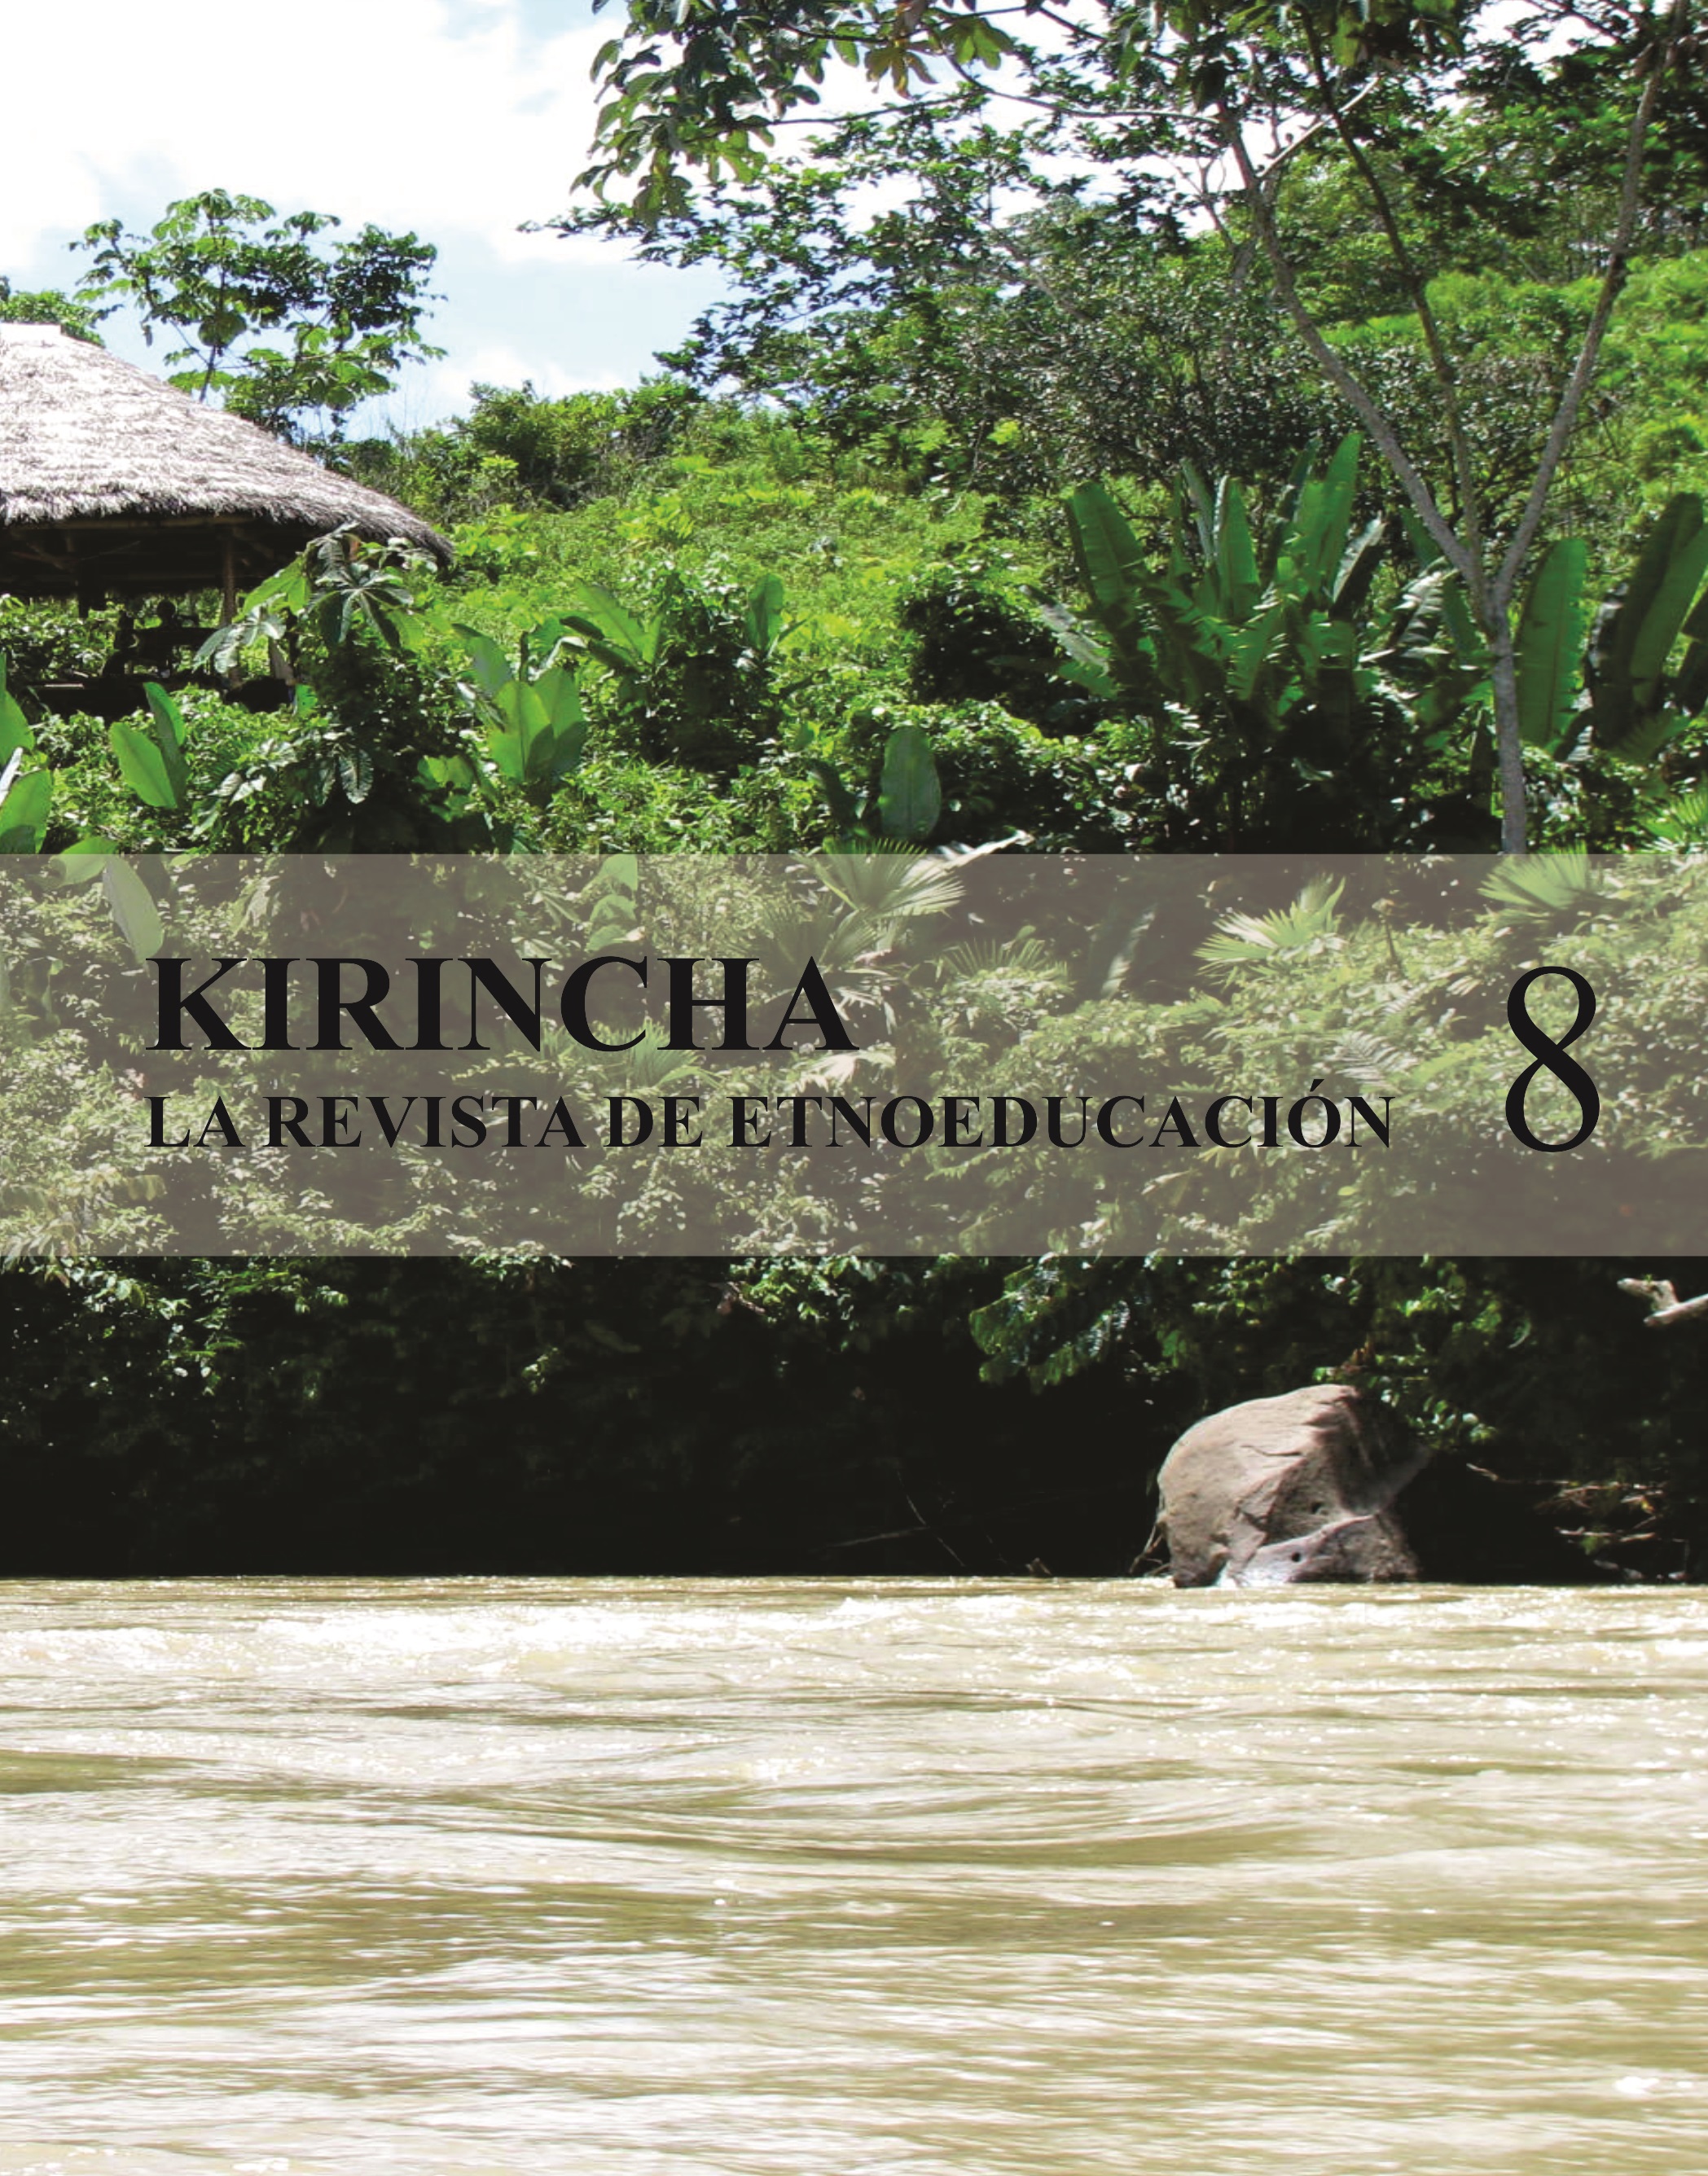 Kirincha 4(8): La revista de etnoeducación